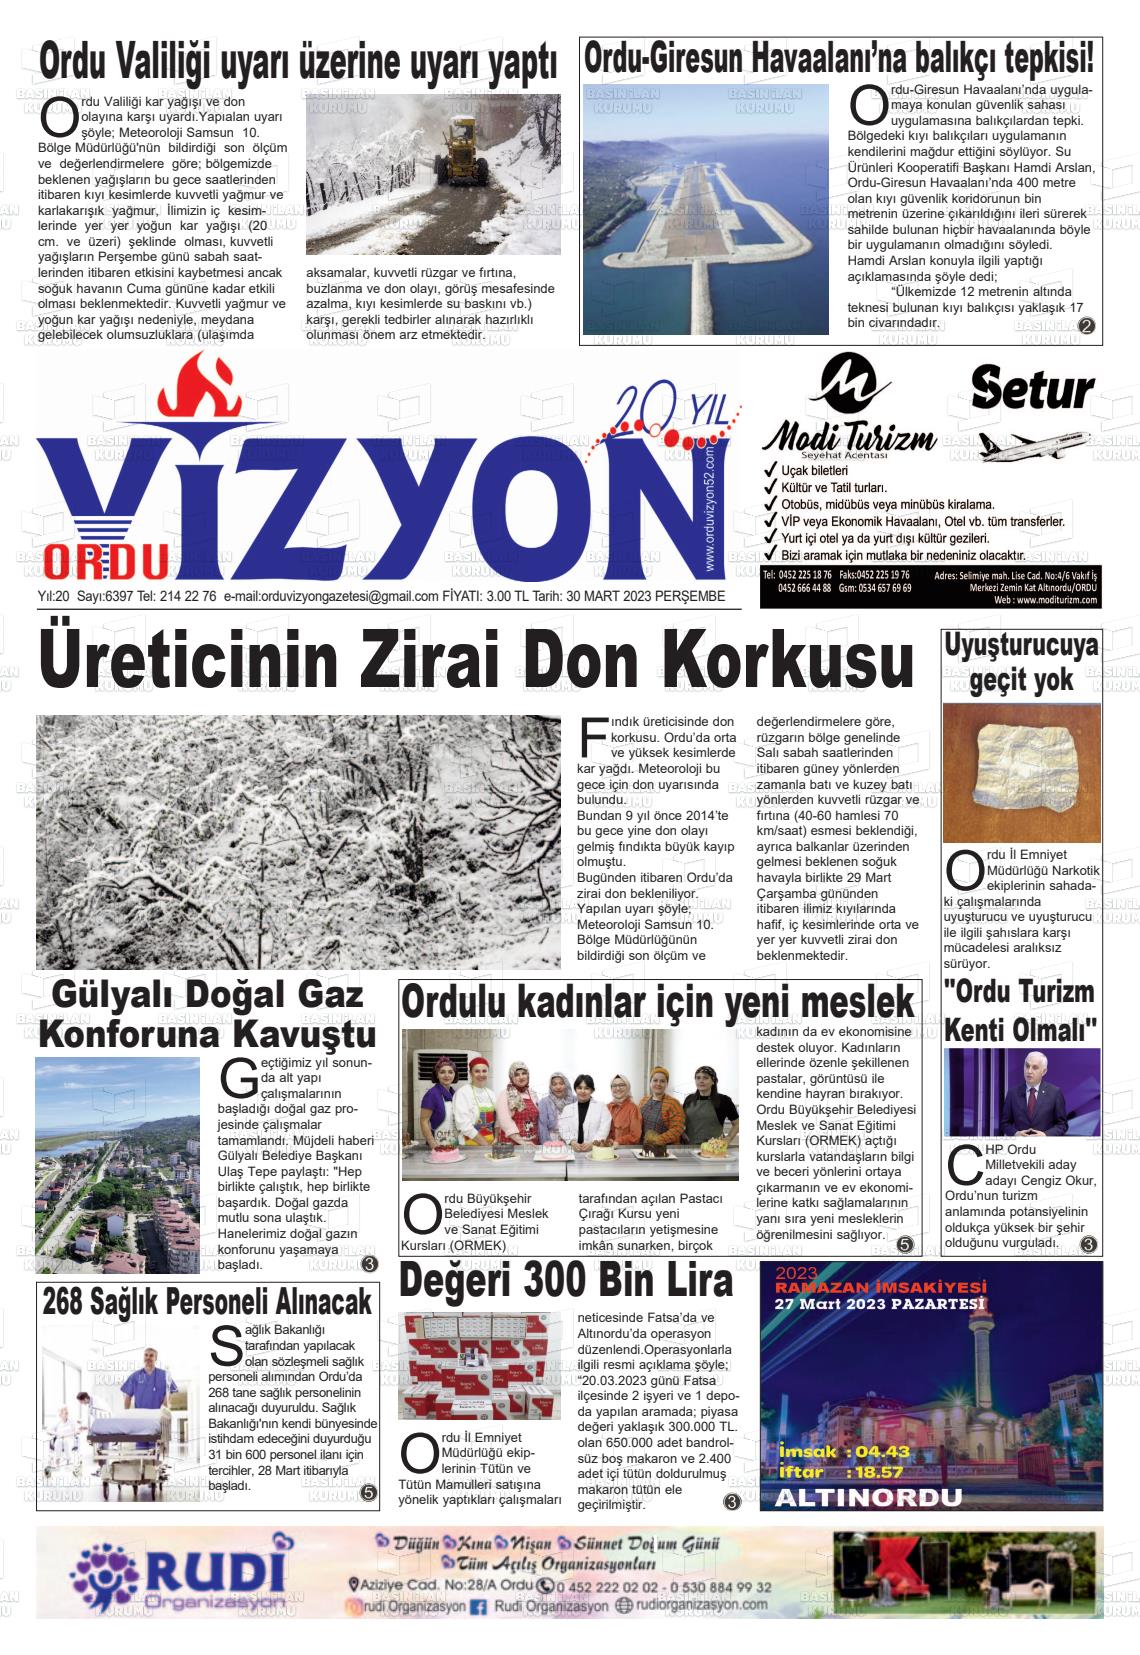 30 Mart 2023 Ordu Vizyon Gazete Manşeti